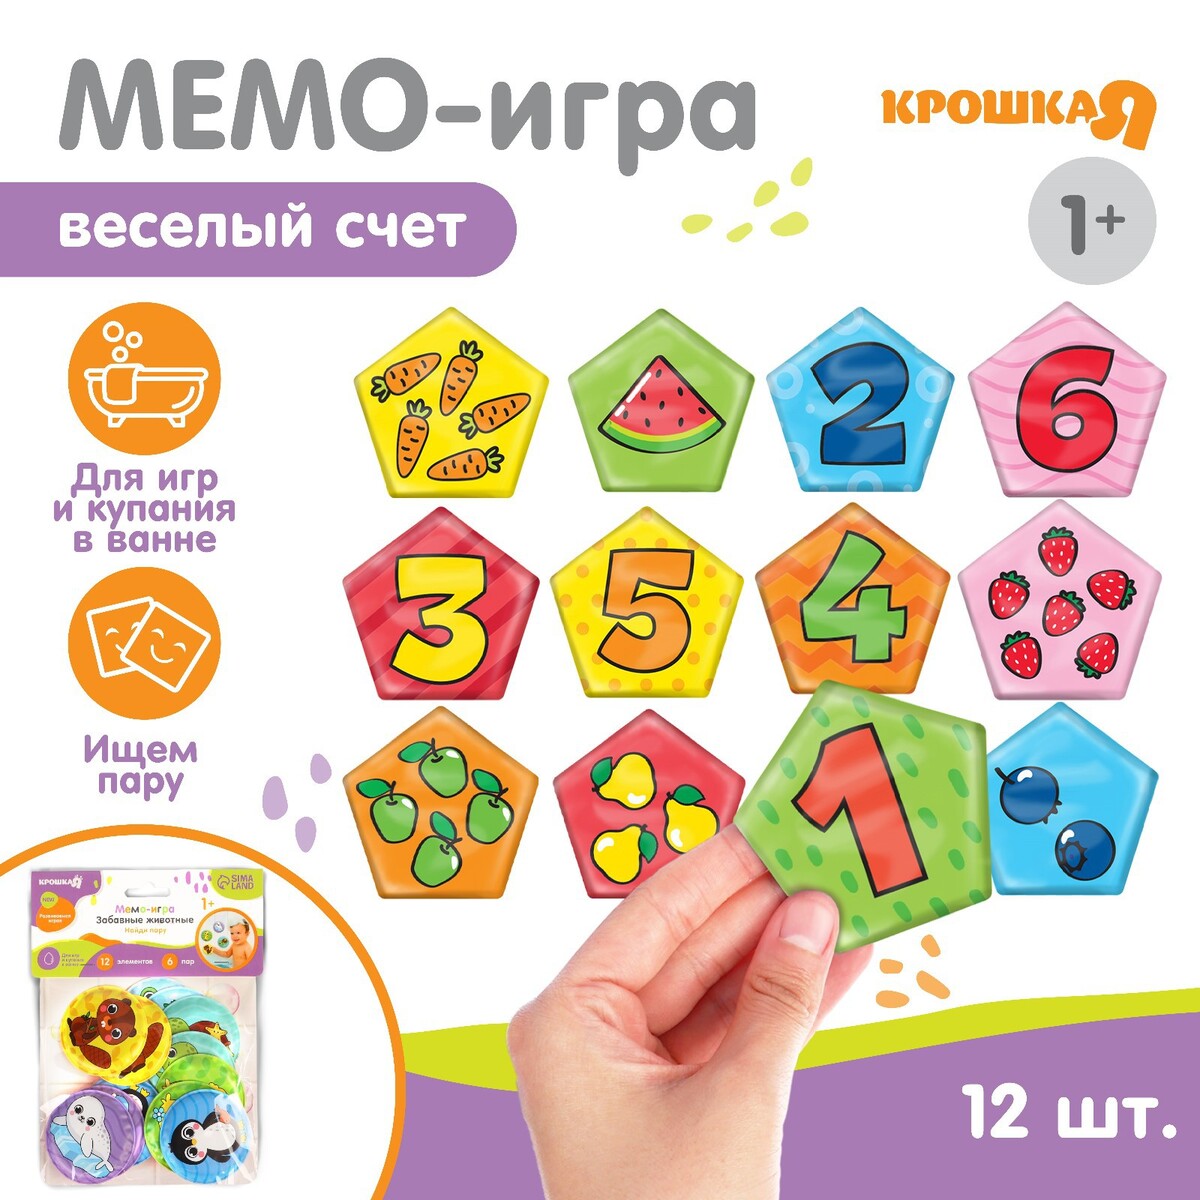 

Мемо-игра: развивающие наклейки - присоски многоразовые для игры в ванной, Разноцветный